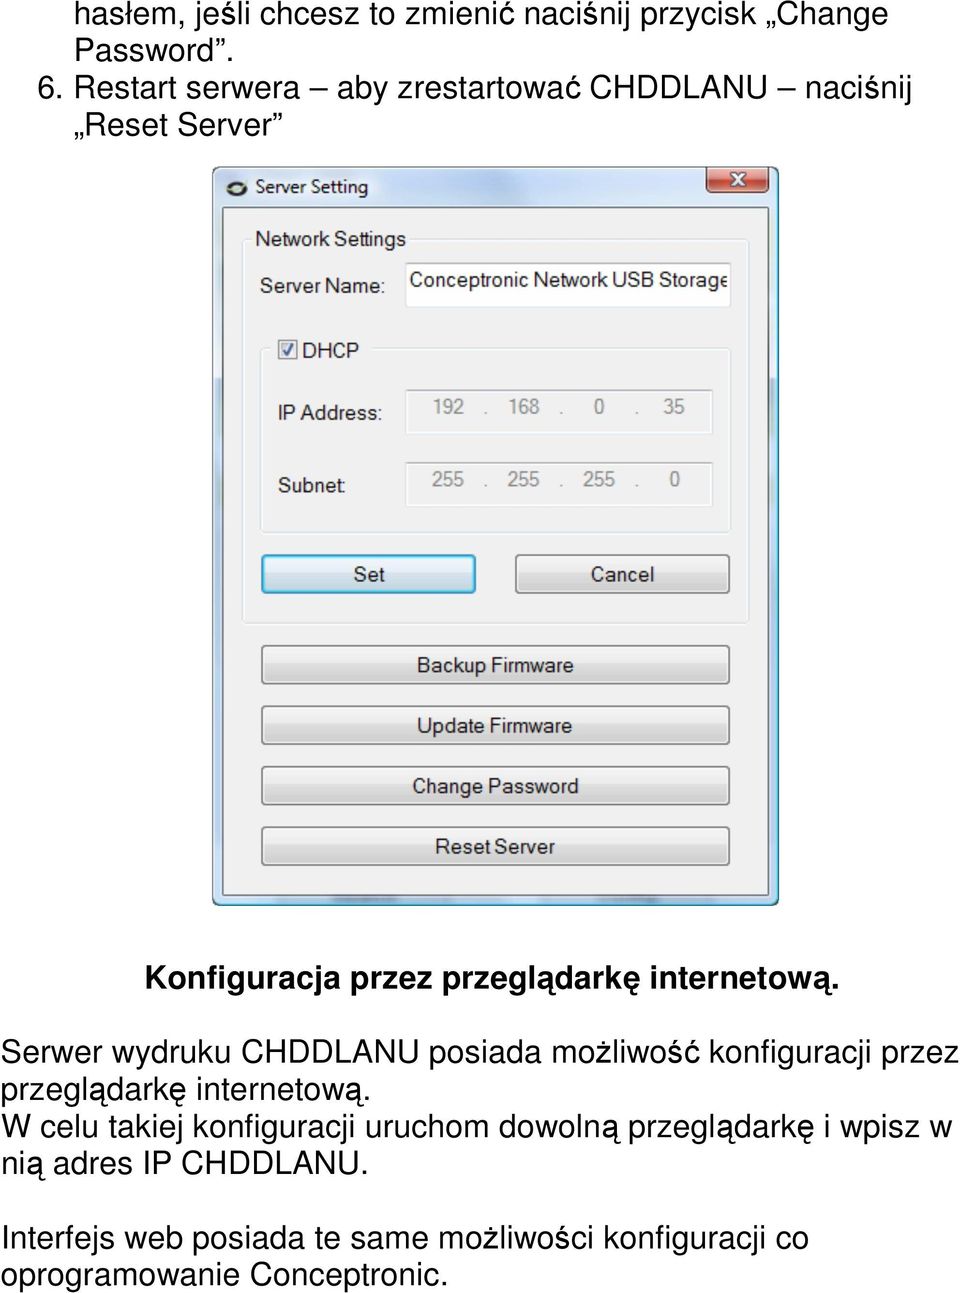 Serwer wydruku CHDDLANU posiada moŝliwość konfiguracji przez przeglądarkę internetową.